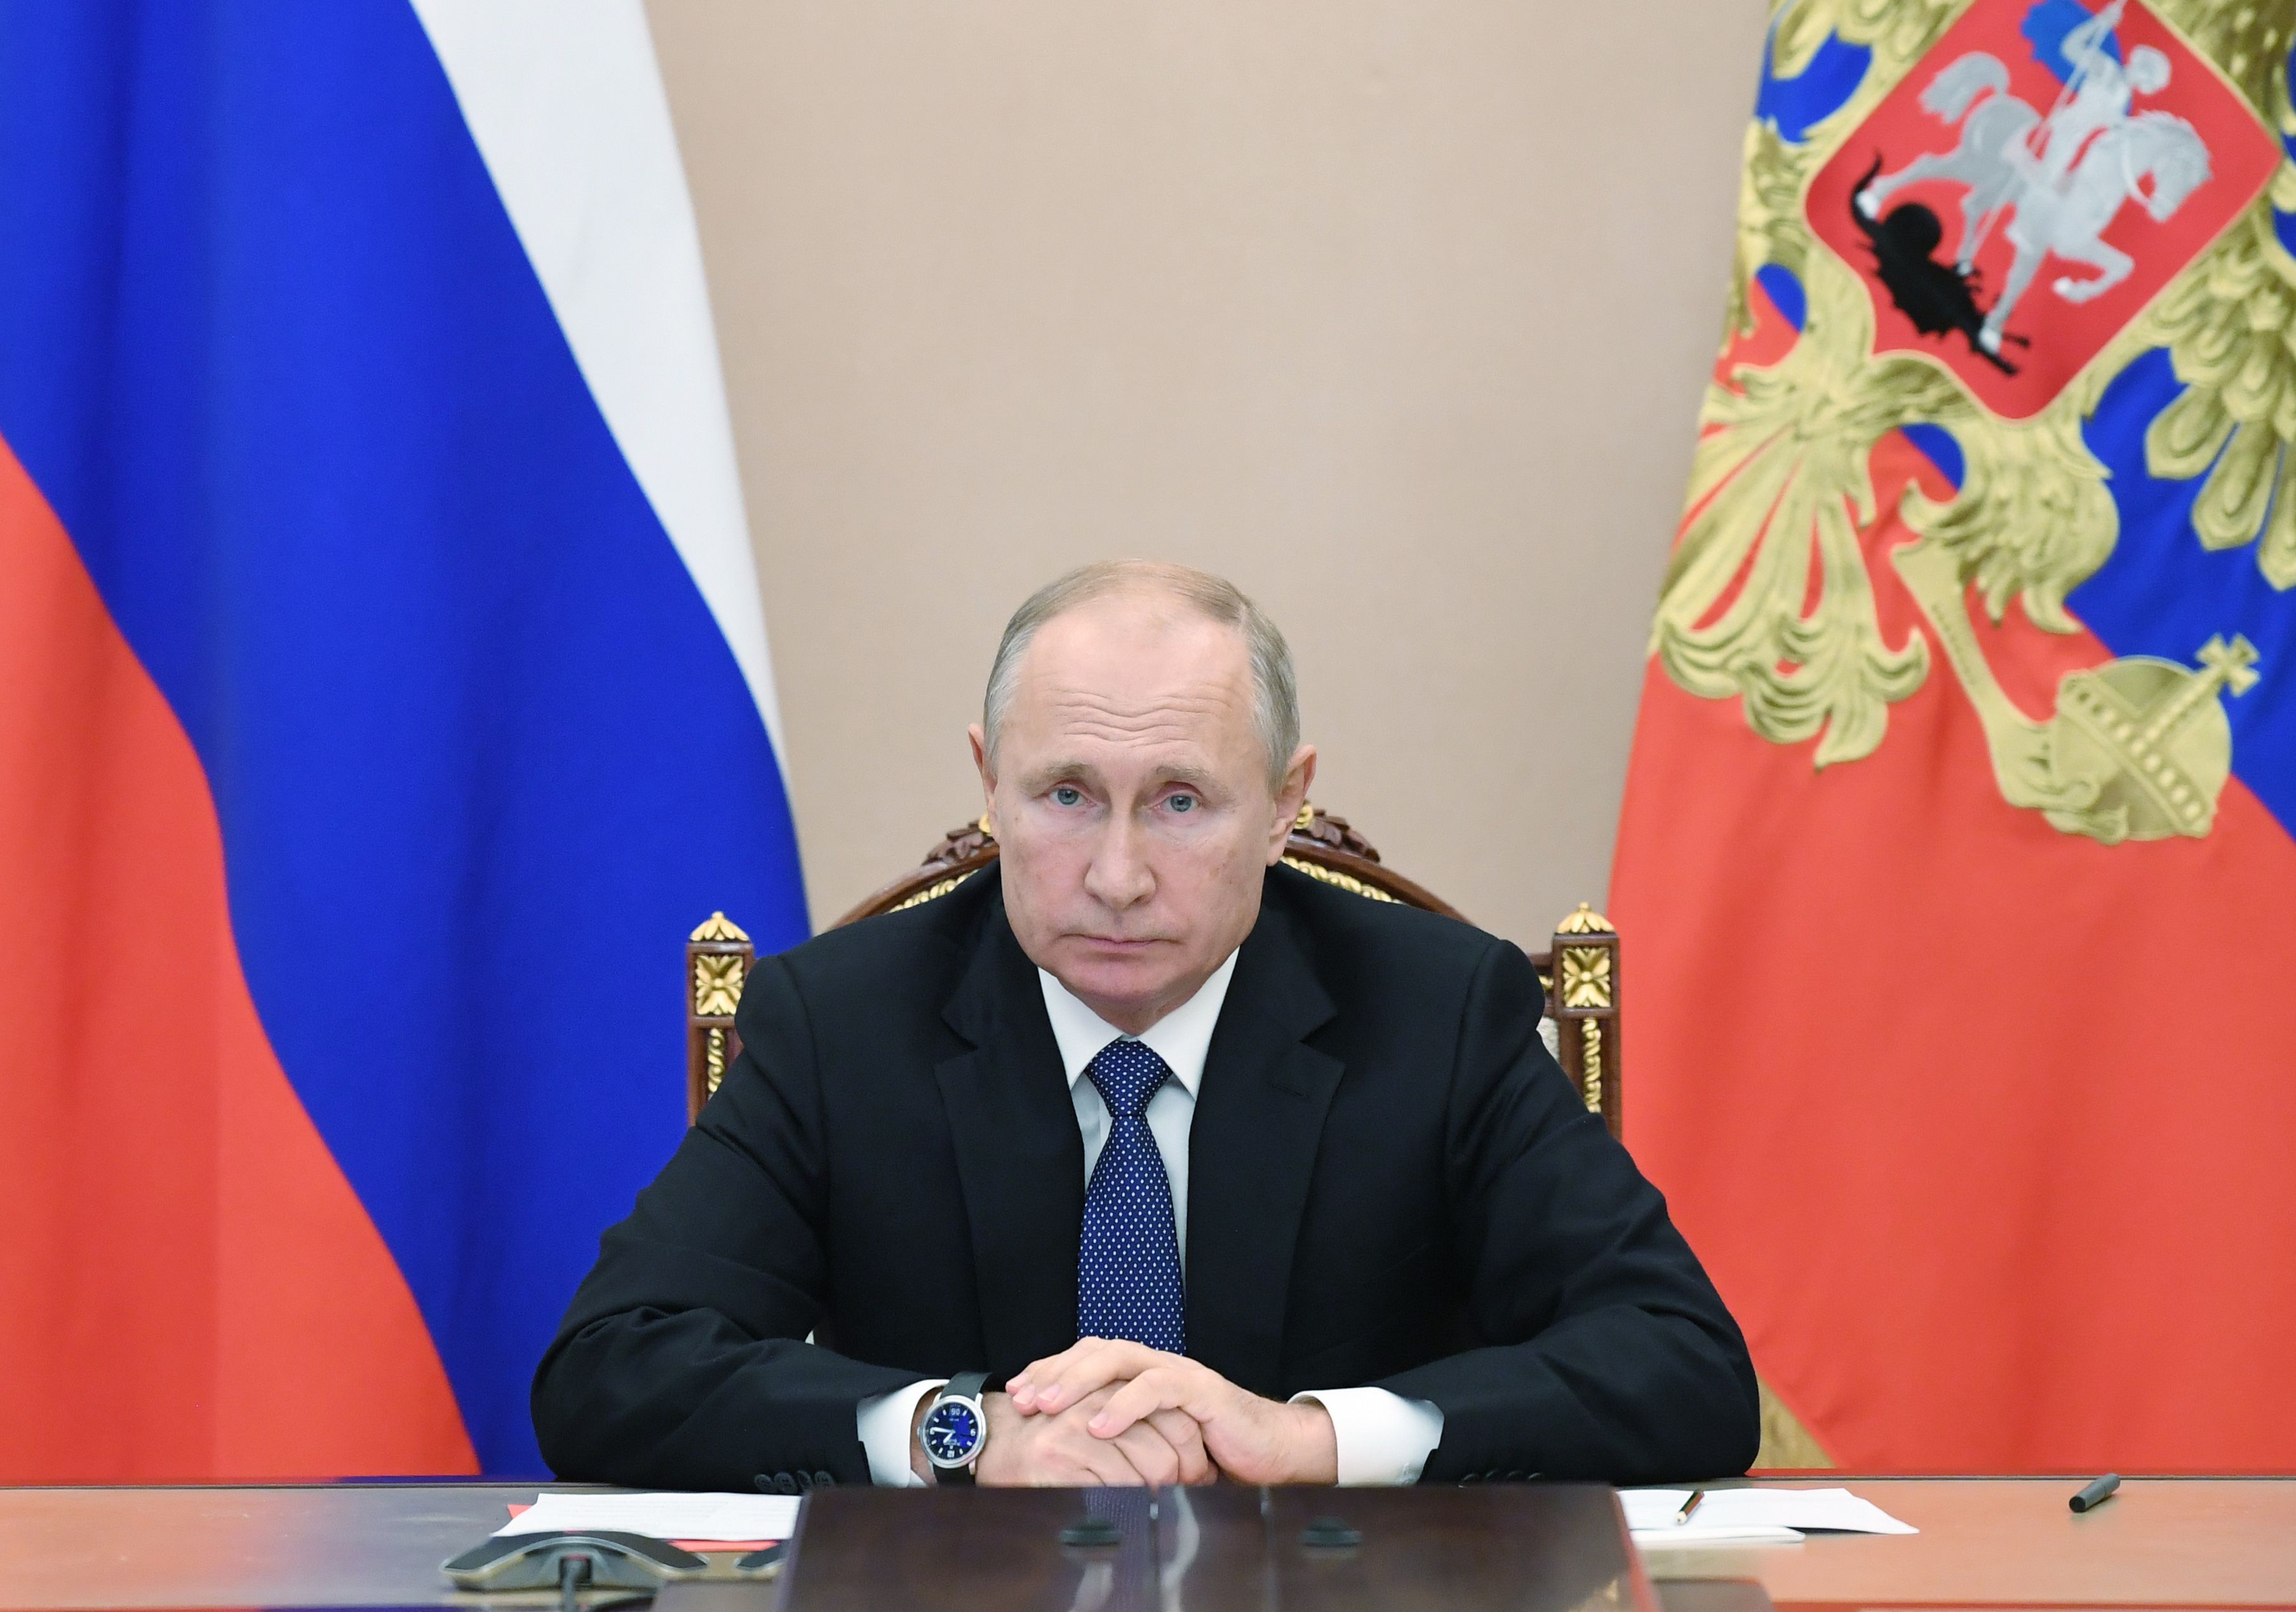 En la actualidad, el presidente ruso Vladimir Putin, debate sobre la vacuna Sputnik V. (Foto Prensa Libre: AFP)